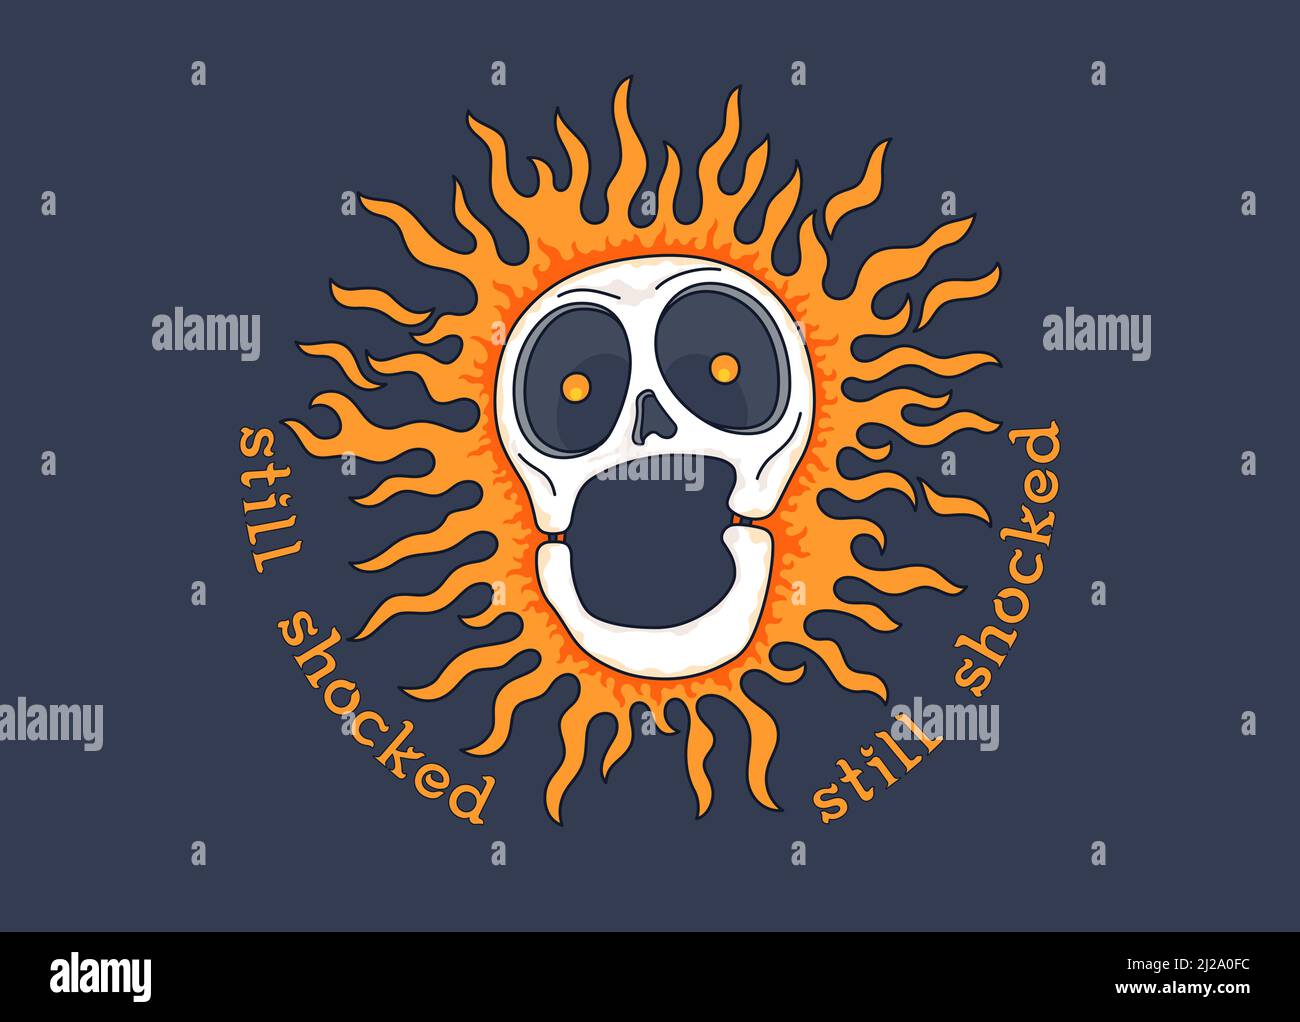 Cheerful cartoon skull on fire with a motivational slogan. Burning skull. Still shocked. Vector graphics Stock Vector